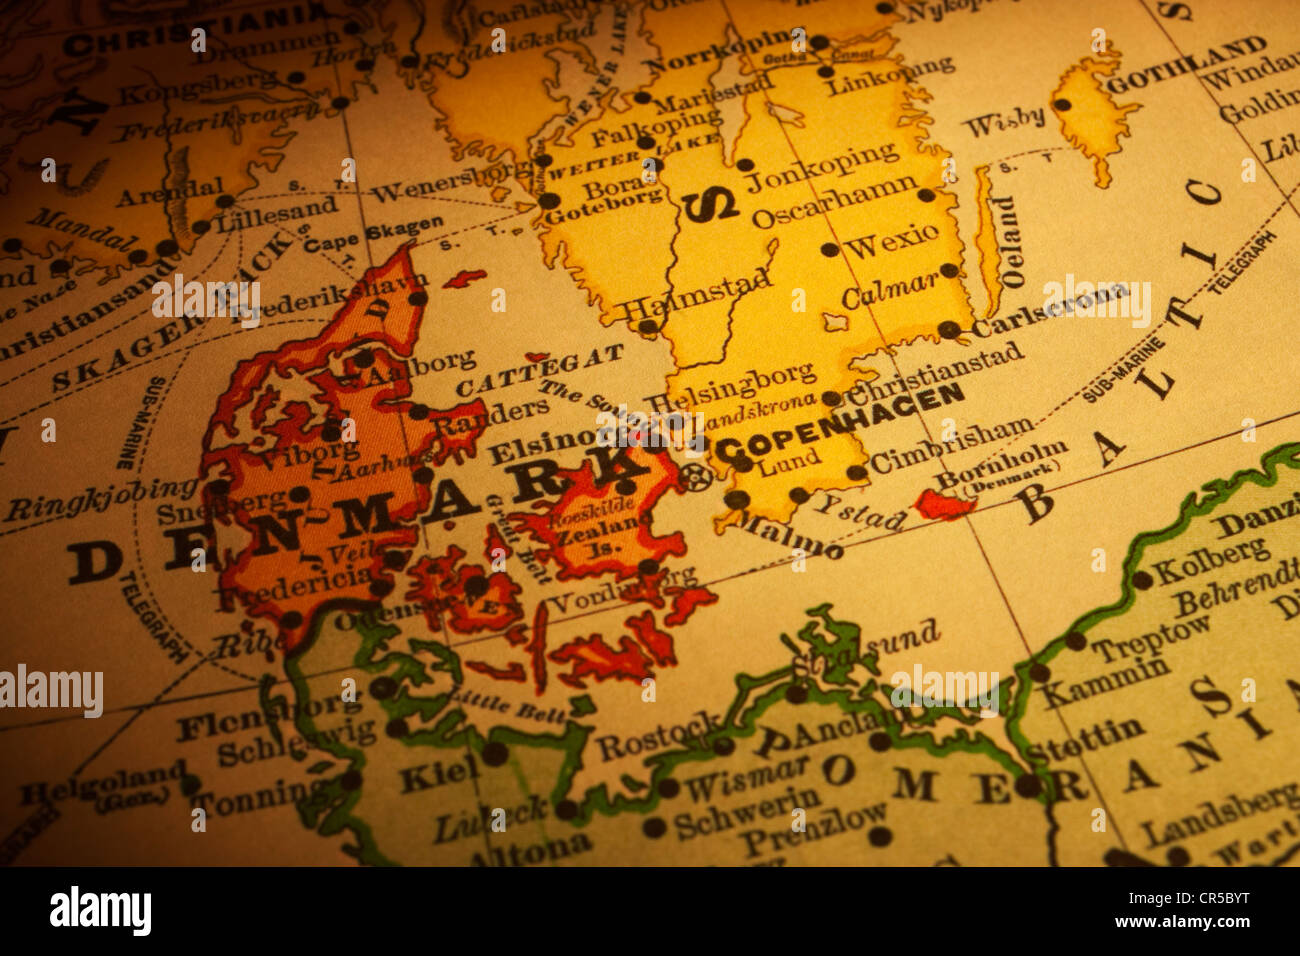 Mappa vecchia della Danimarca e della Svezia, il focus è sulla Danimarca. Mappa è dal 1894 ed è al di fuori del diritto d'autore. Foto Stock